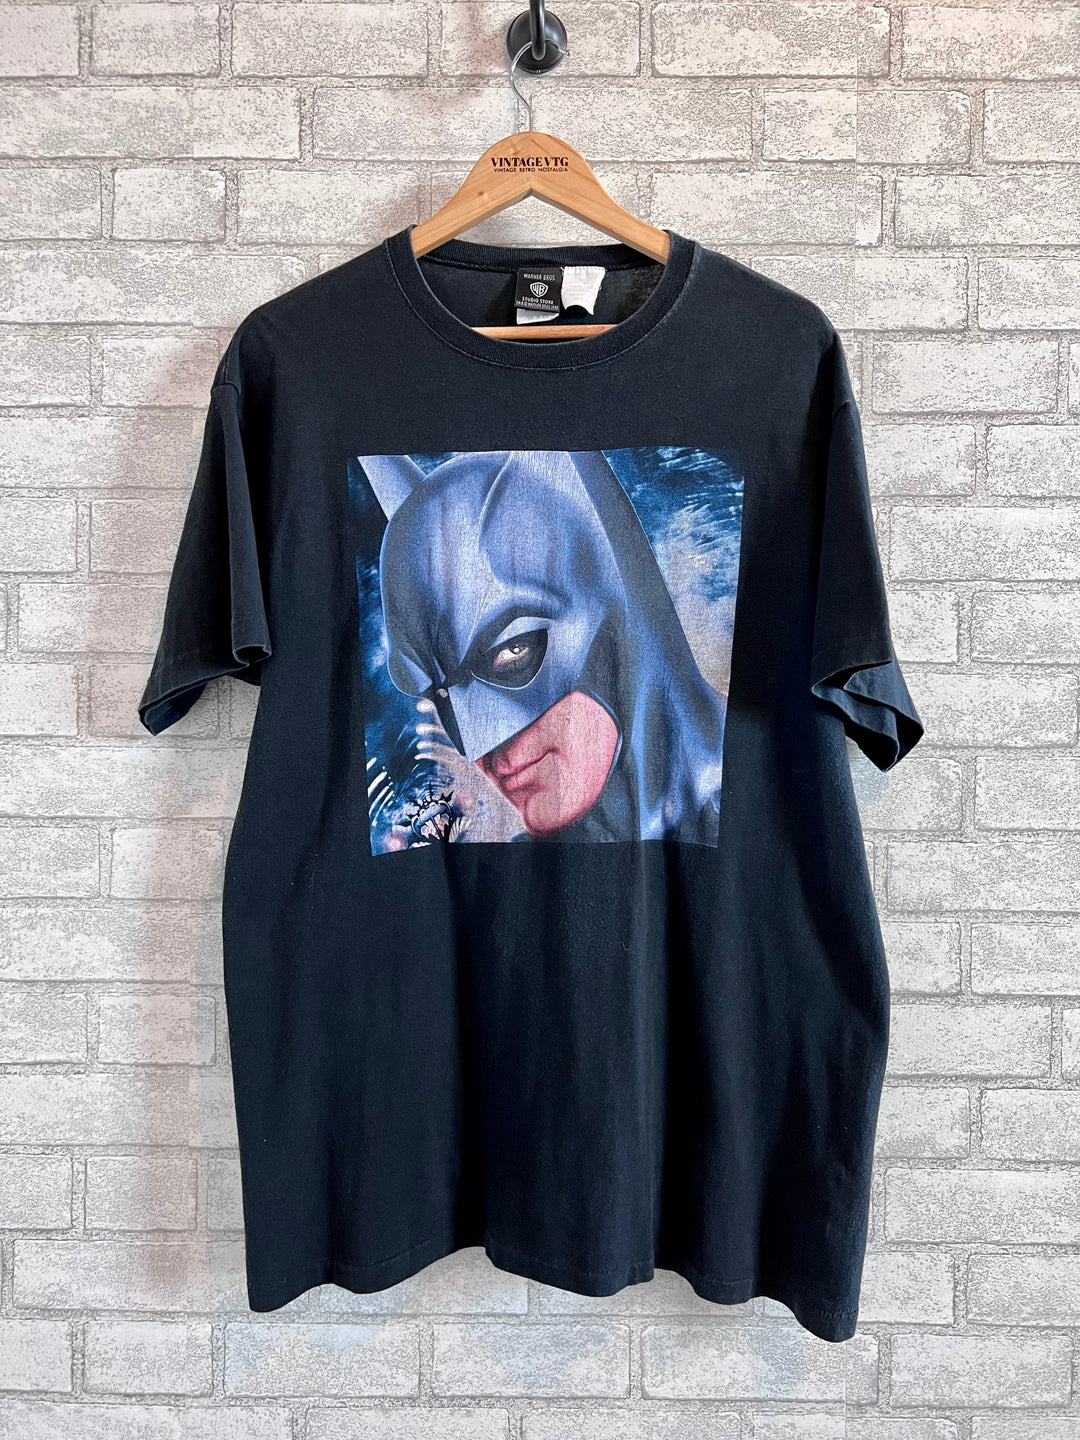 Vintage 1997 Batman & Robin Movie Shirt. Large